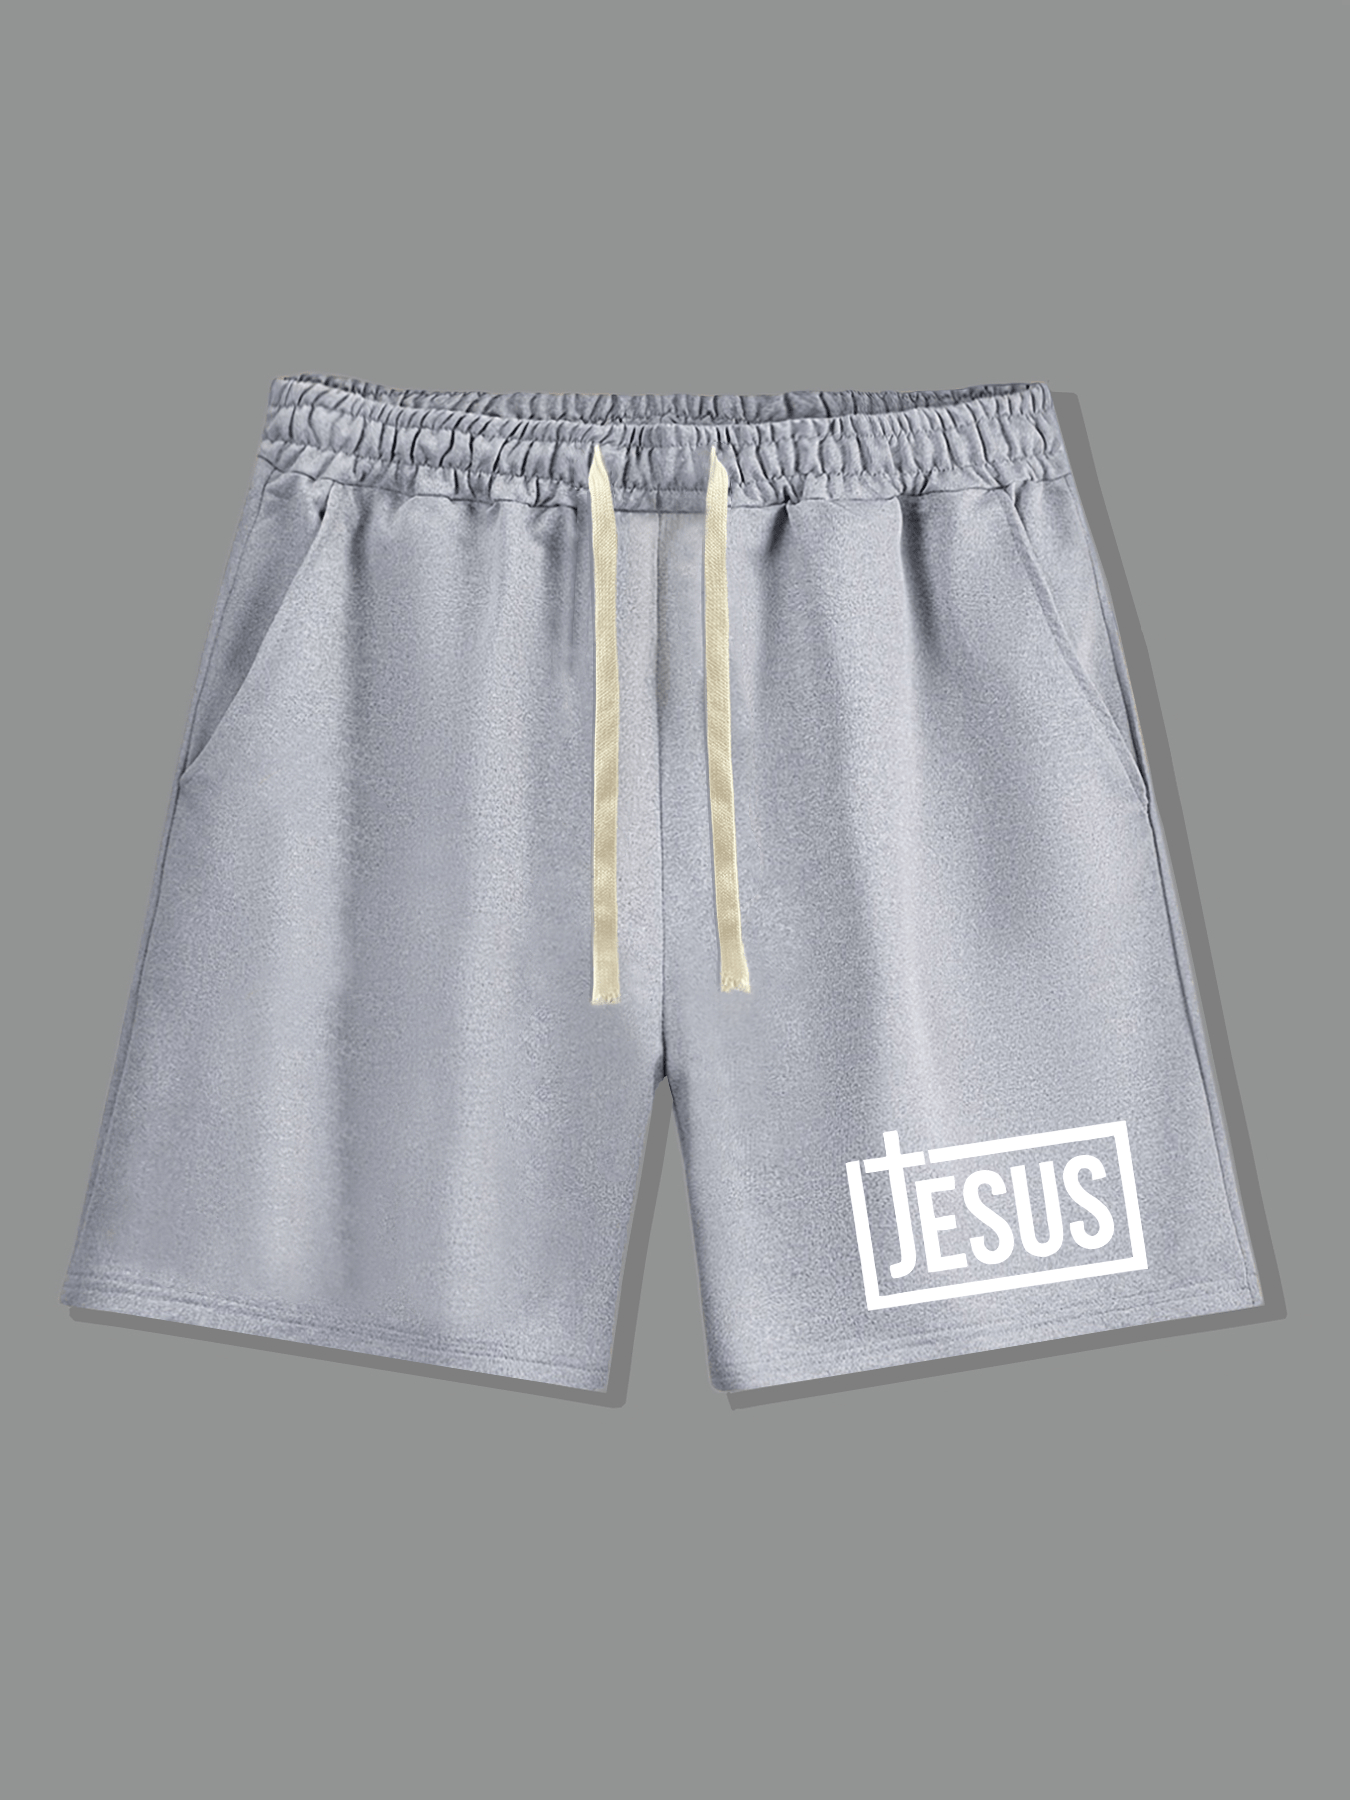 Jesus Cross Men's Christian Shorts claimedbygoddesigns